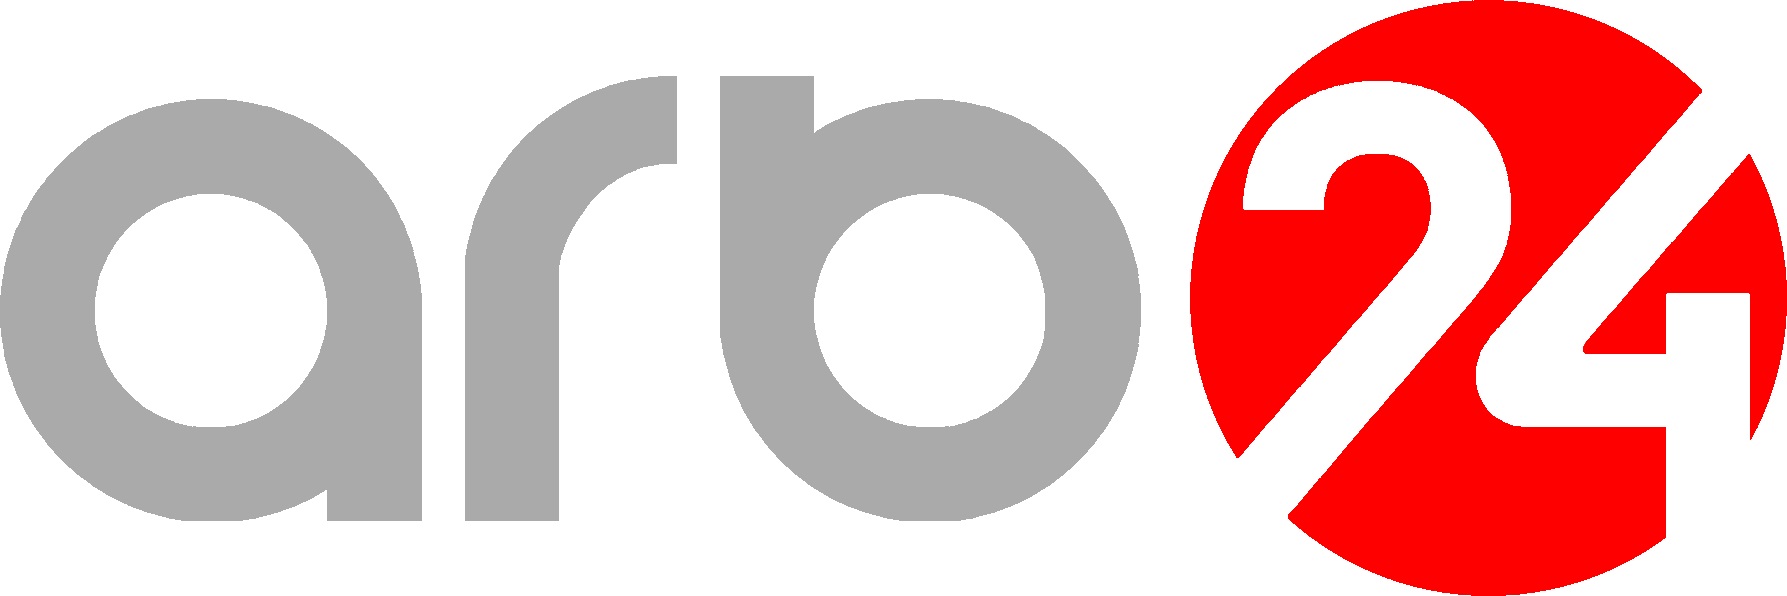 Arb tv atv tv tv tv. Логотипы телеканалов. Азербайджанские Телеканалы. Логотип азербайджанских Телеканал. ARB 24.